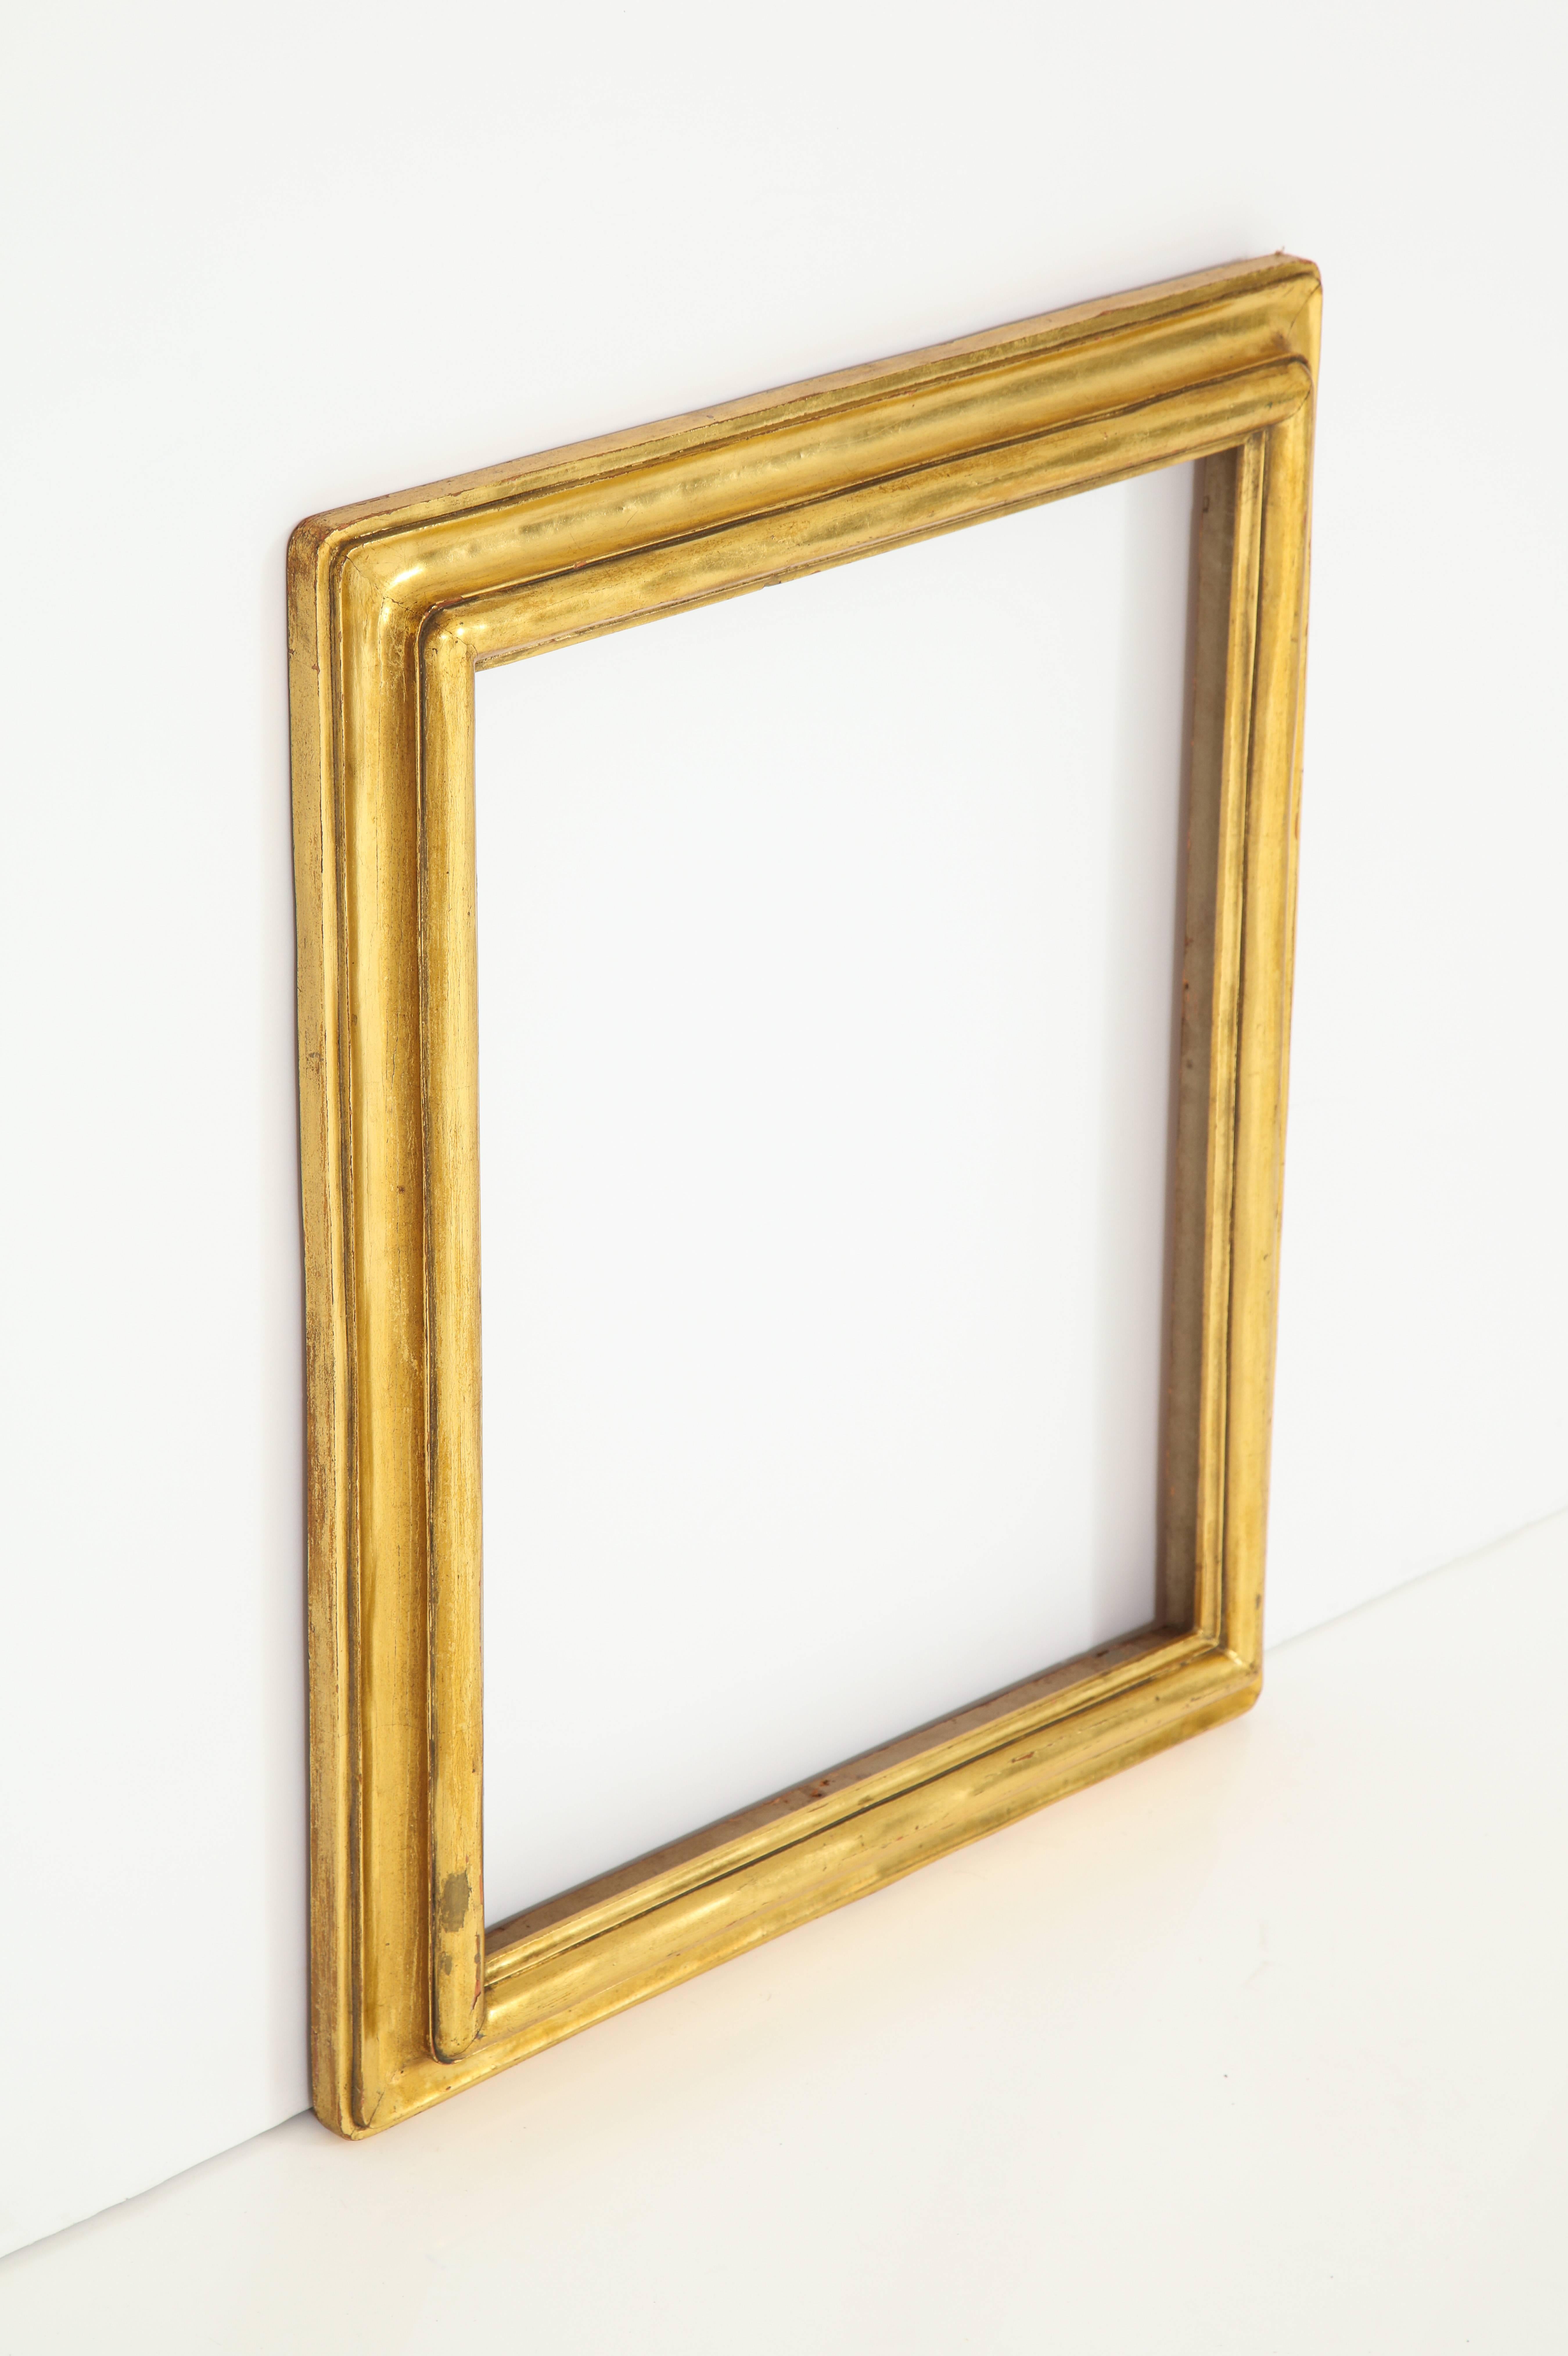 Ein wunderschöner vergoldeter amerikanischer Arts-and-Crafts-Rahmen. 
Hergestellt von Foster Brothers
Amerikanisch:: ca. 1904. 
Größe: 24" hoch x 20" breit x 2 1/2" tief.